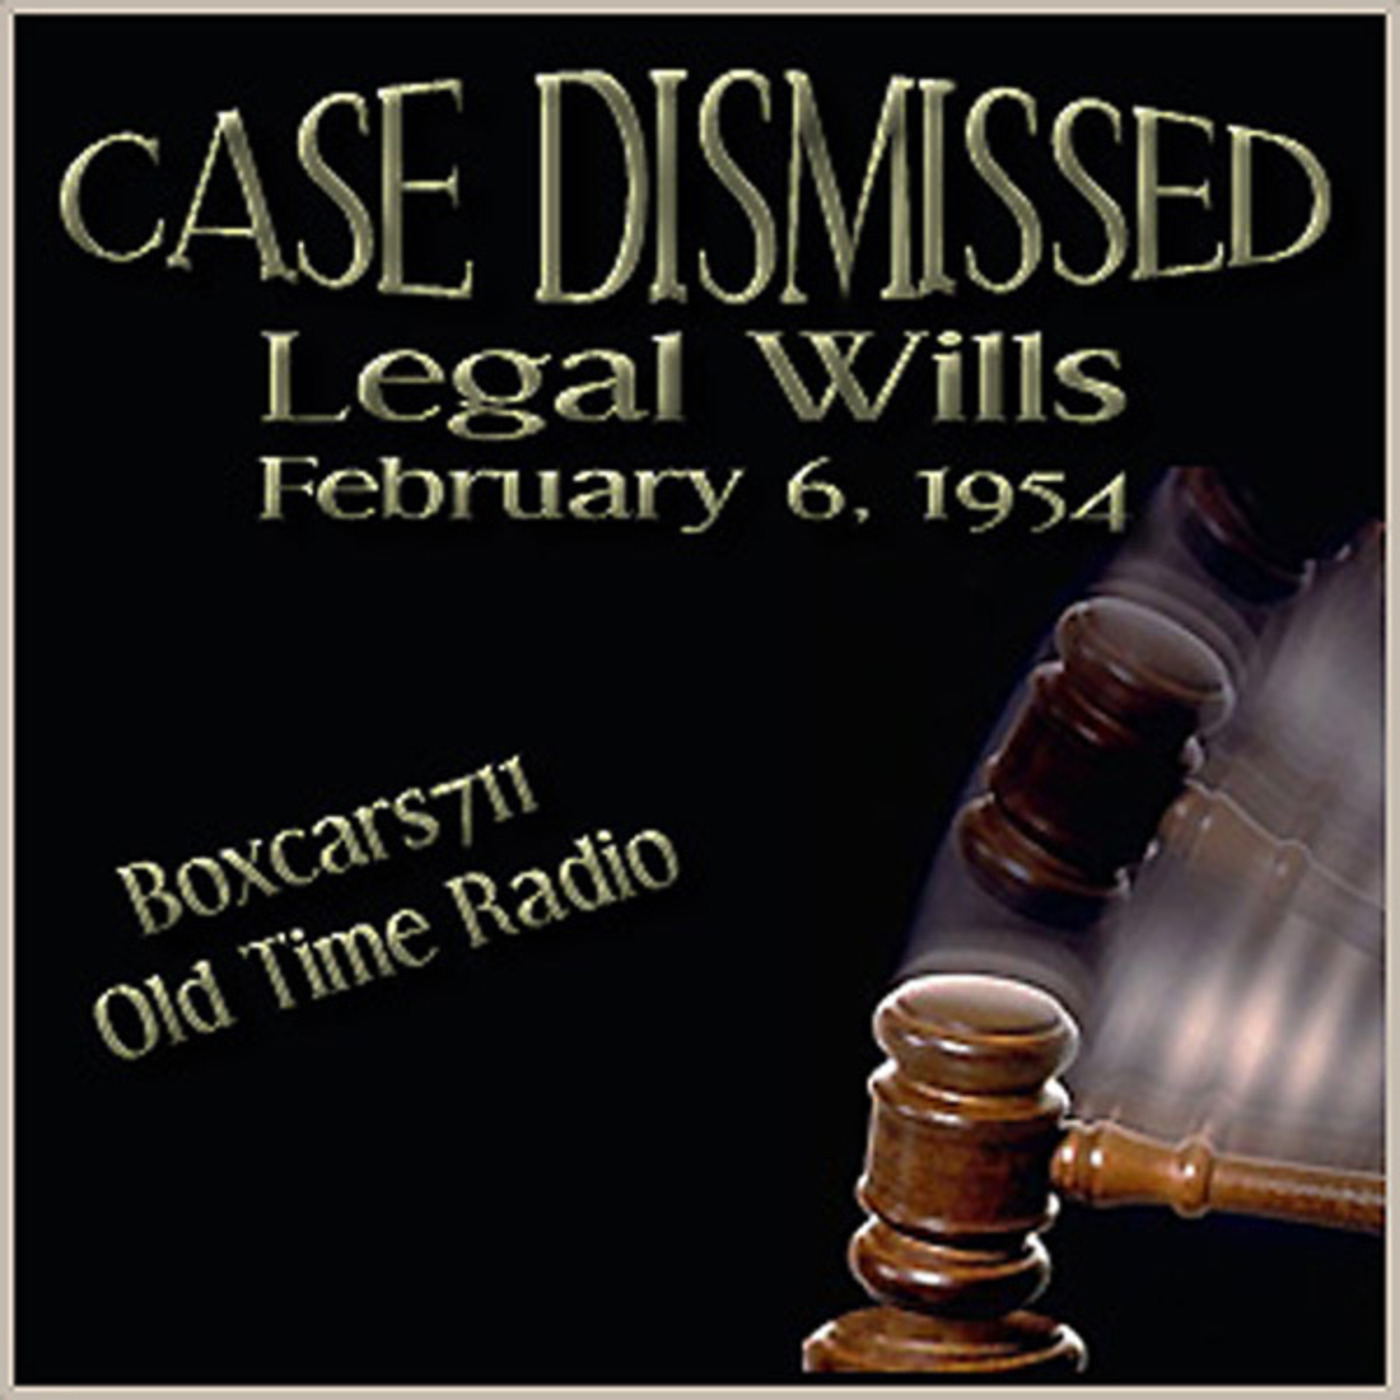 Episode 9609: Case Dismissed - 